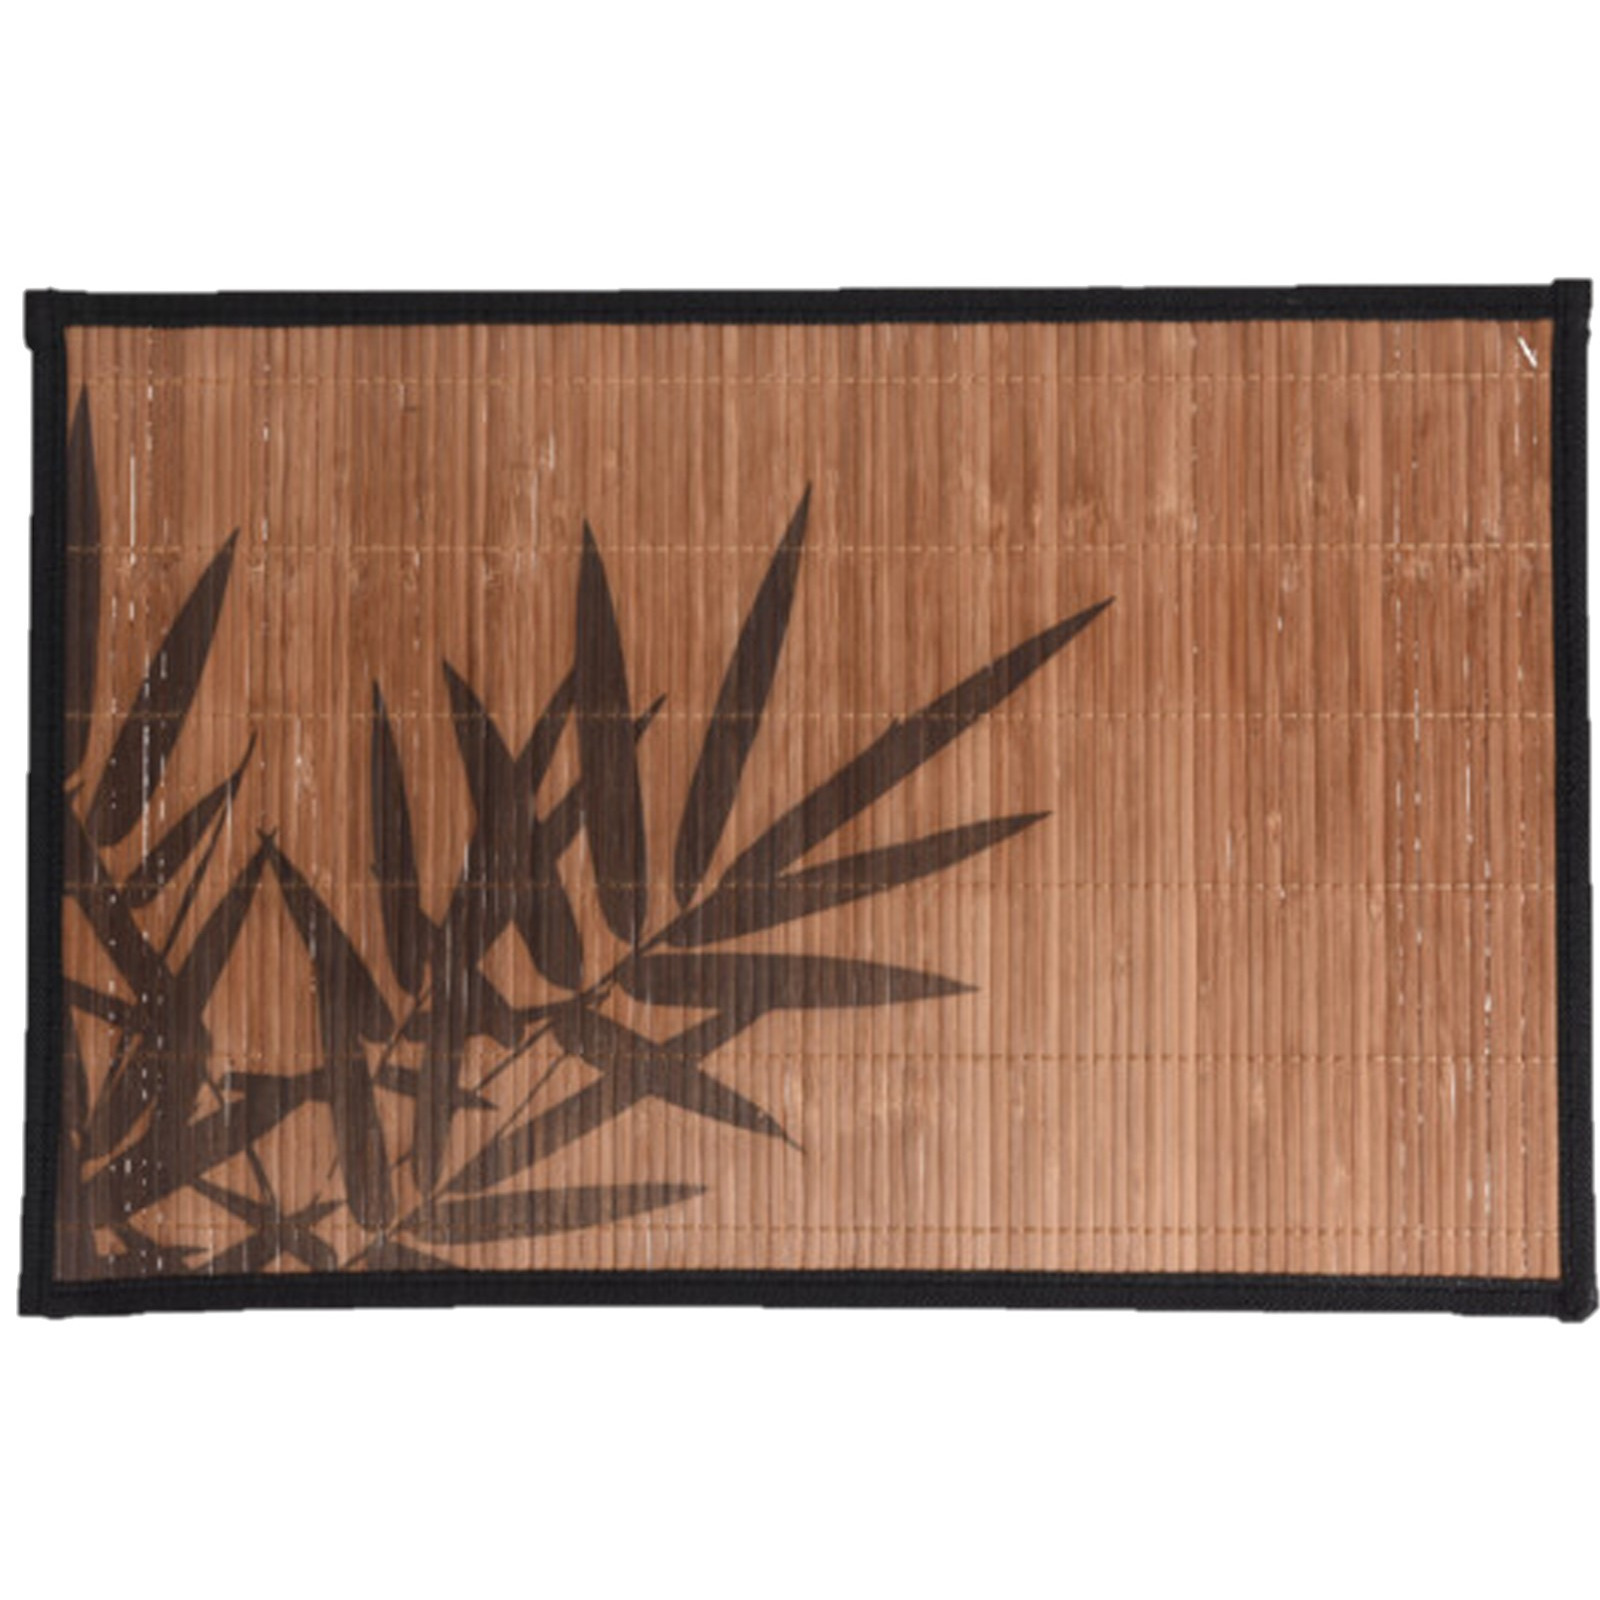 Rechthoekige placemat 30 x 45 cm bamboe bruin met zwarte bamboe print 2